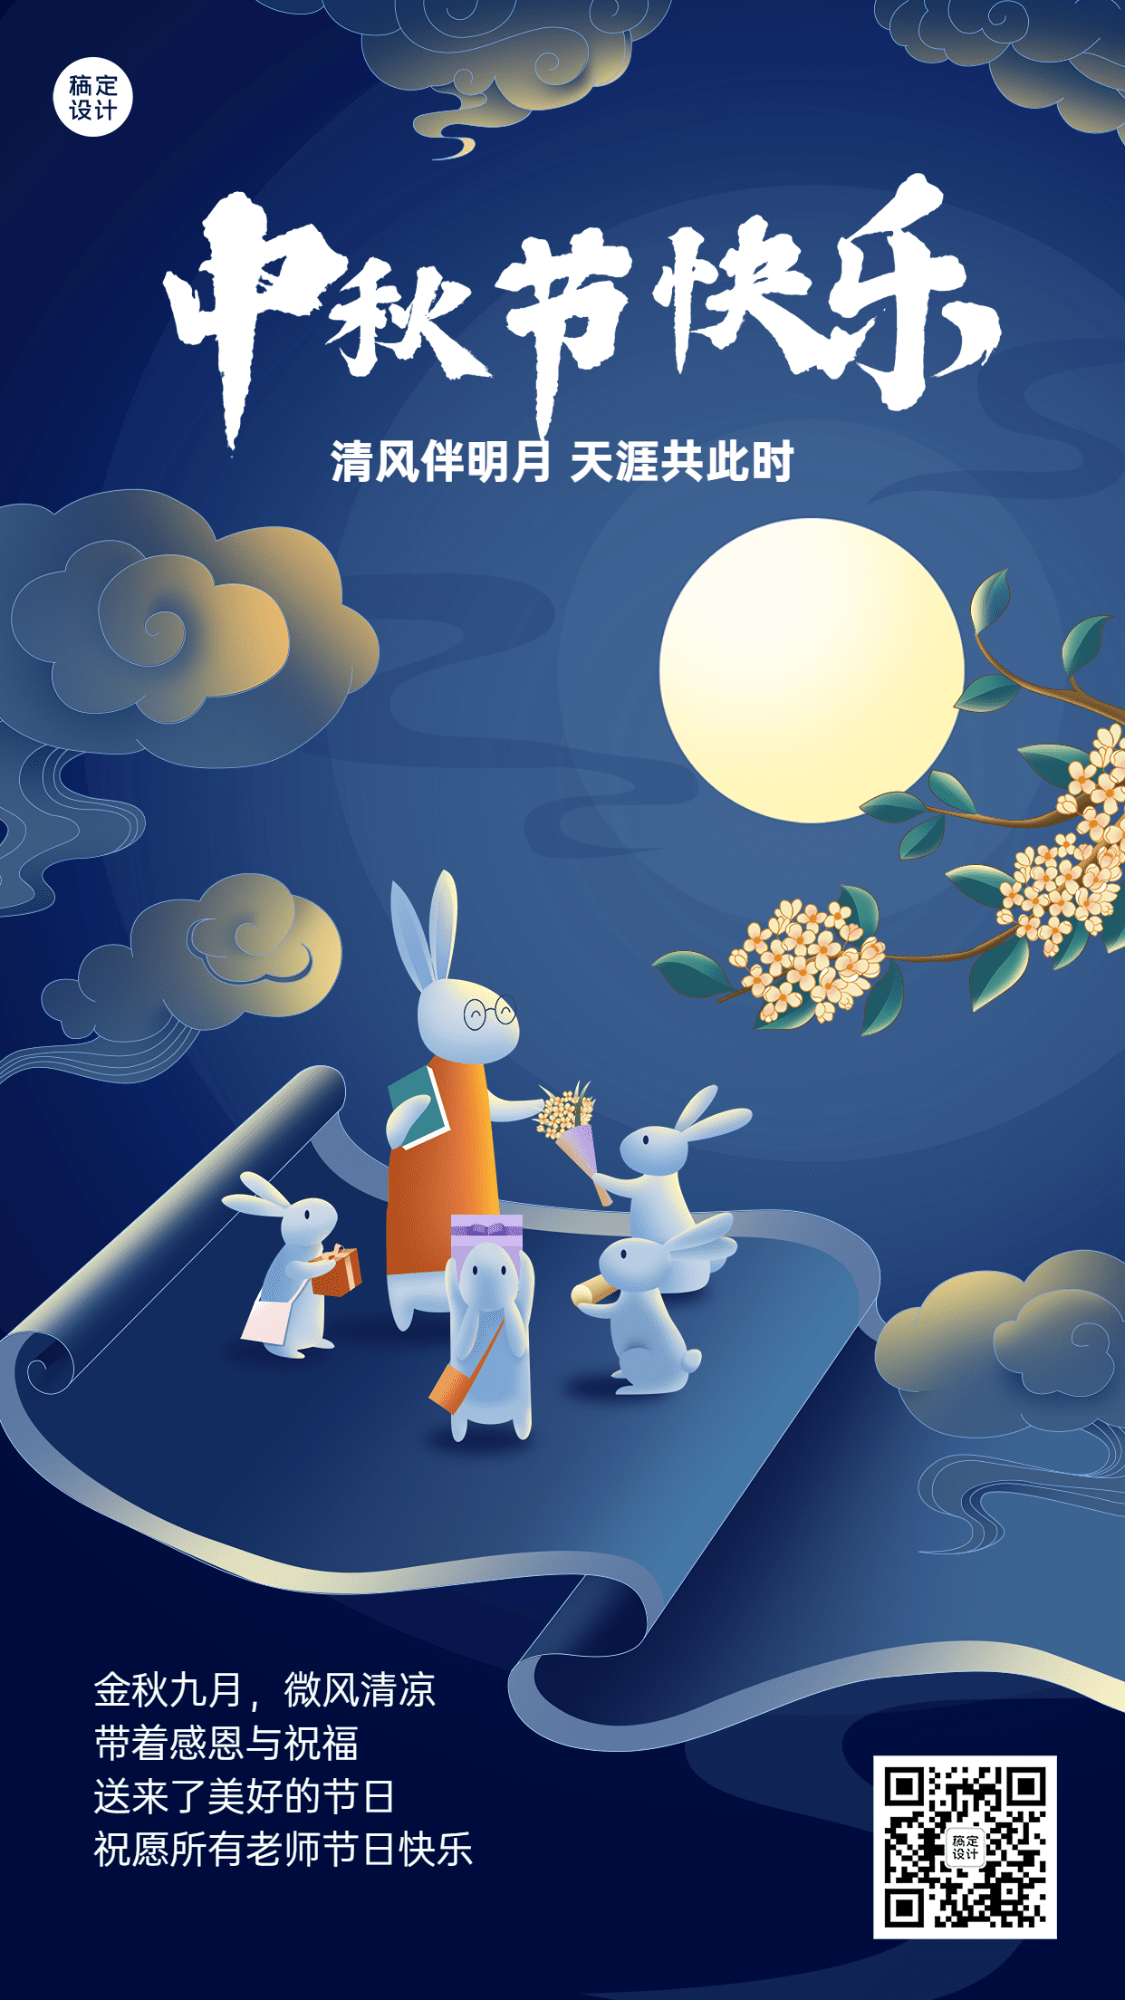 中秋节祝福教育行业中式感插画手机海报